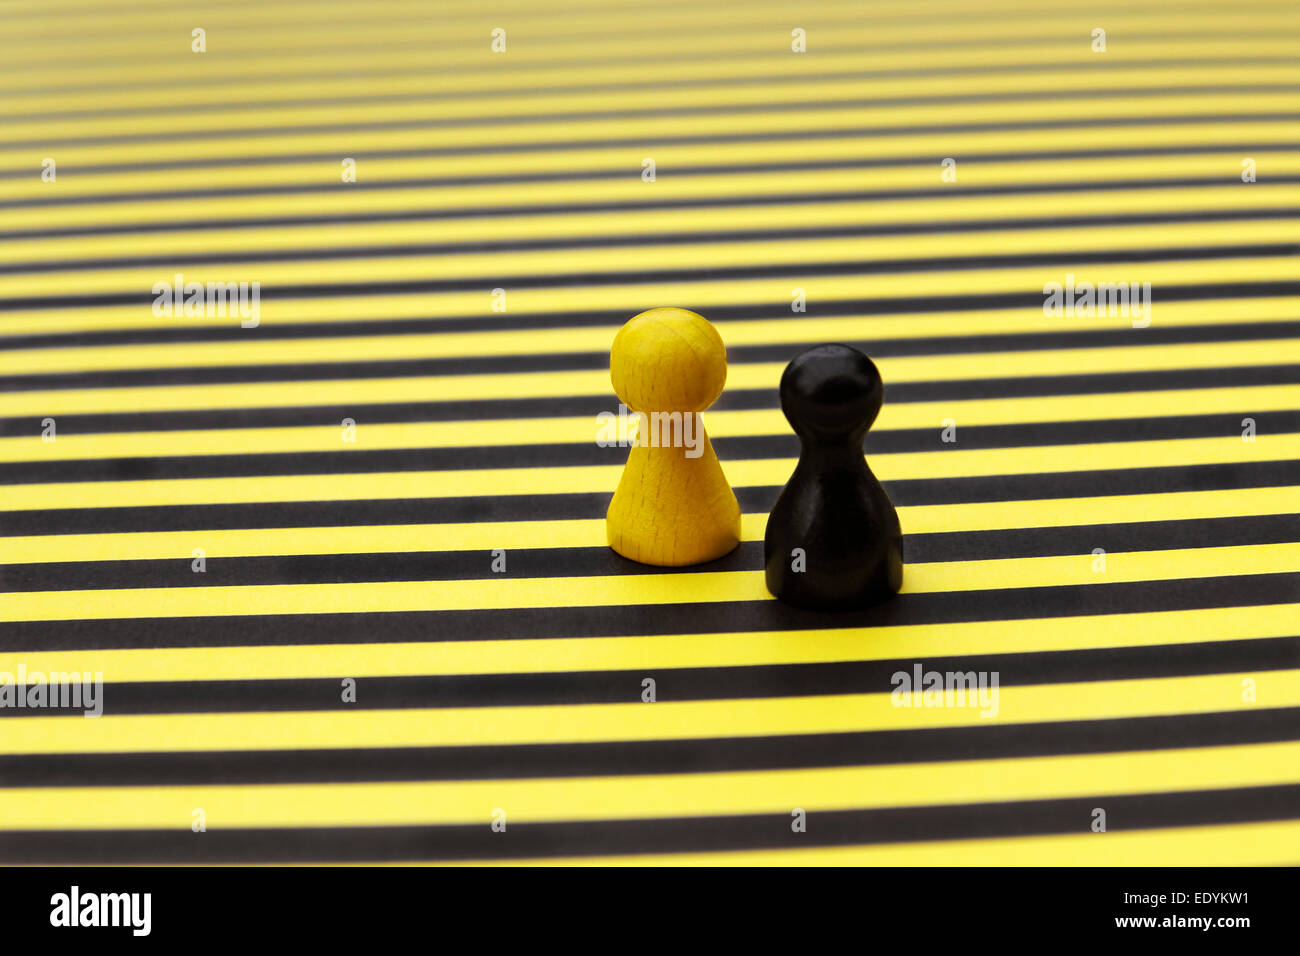 Eine gelbe und eine schwarze Spielsteins, nebeneinander, auf einem gelb-schwarz gestreiften Brett Stockfoto